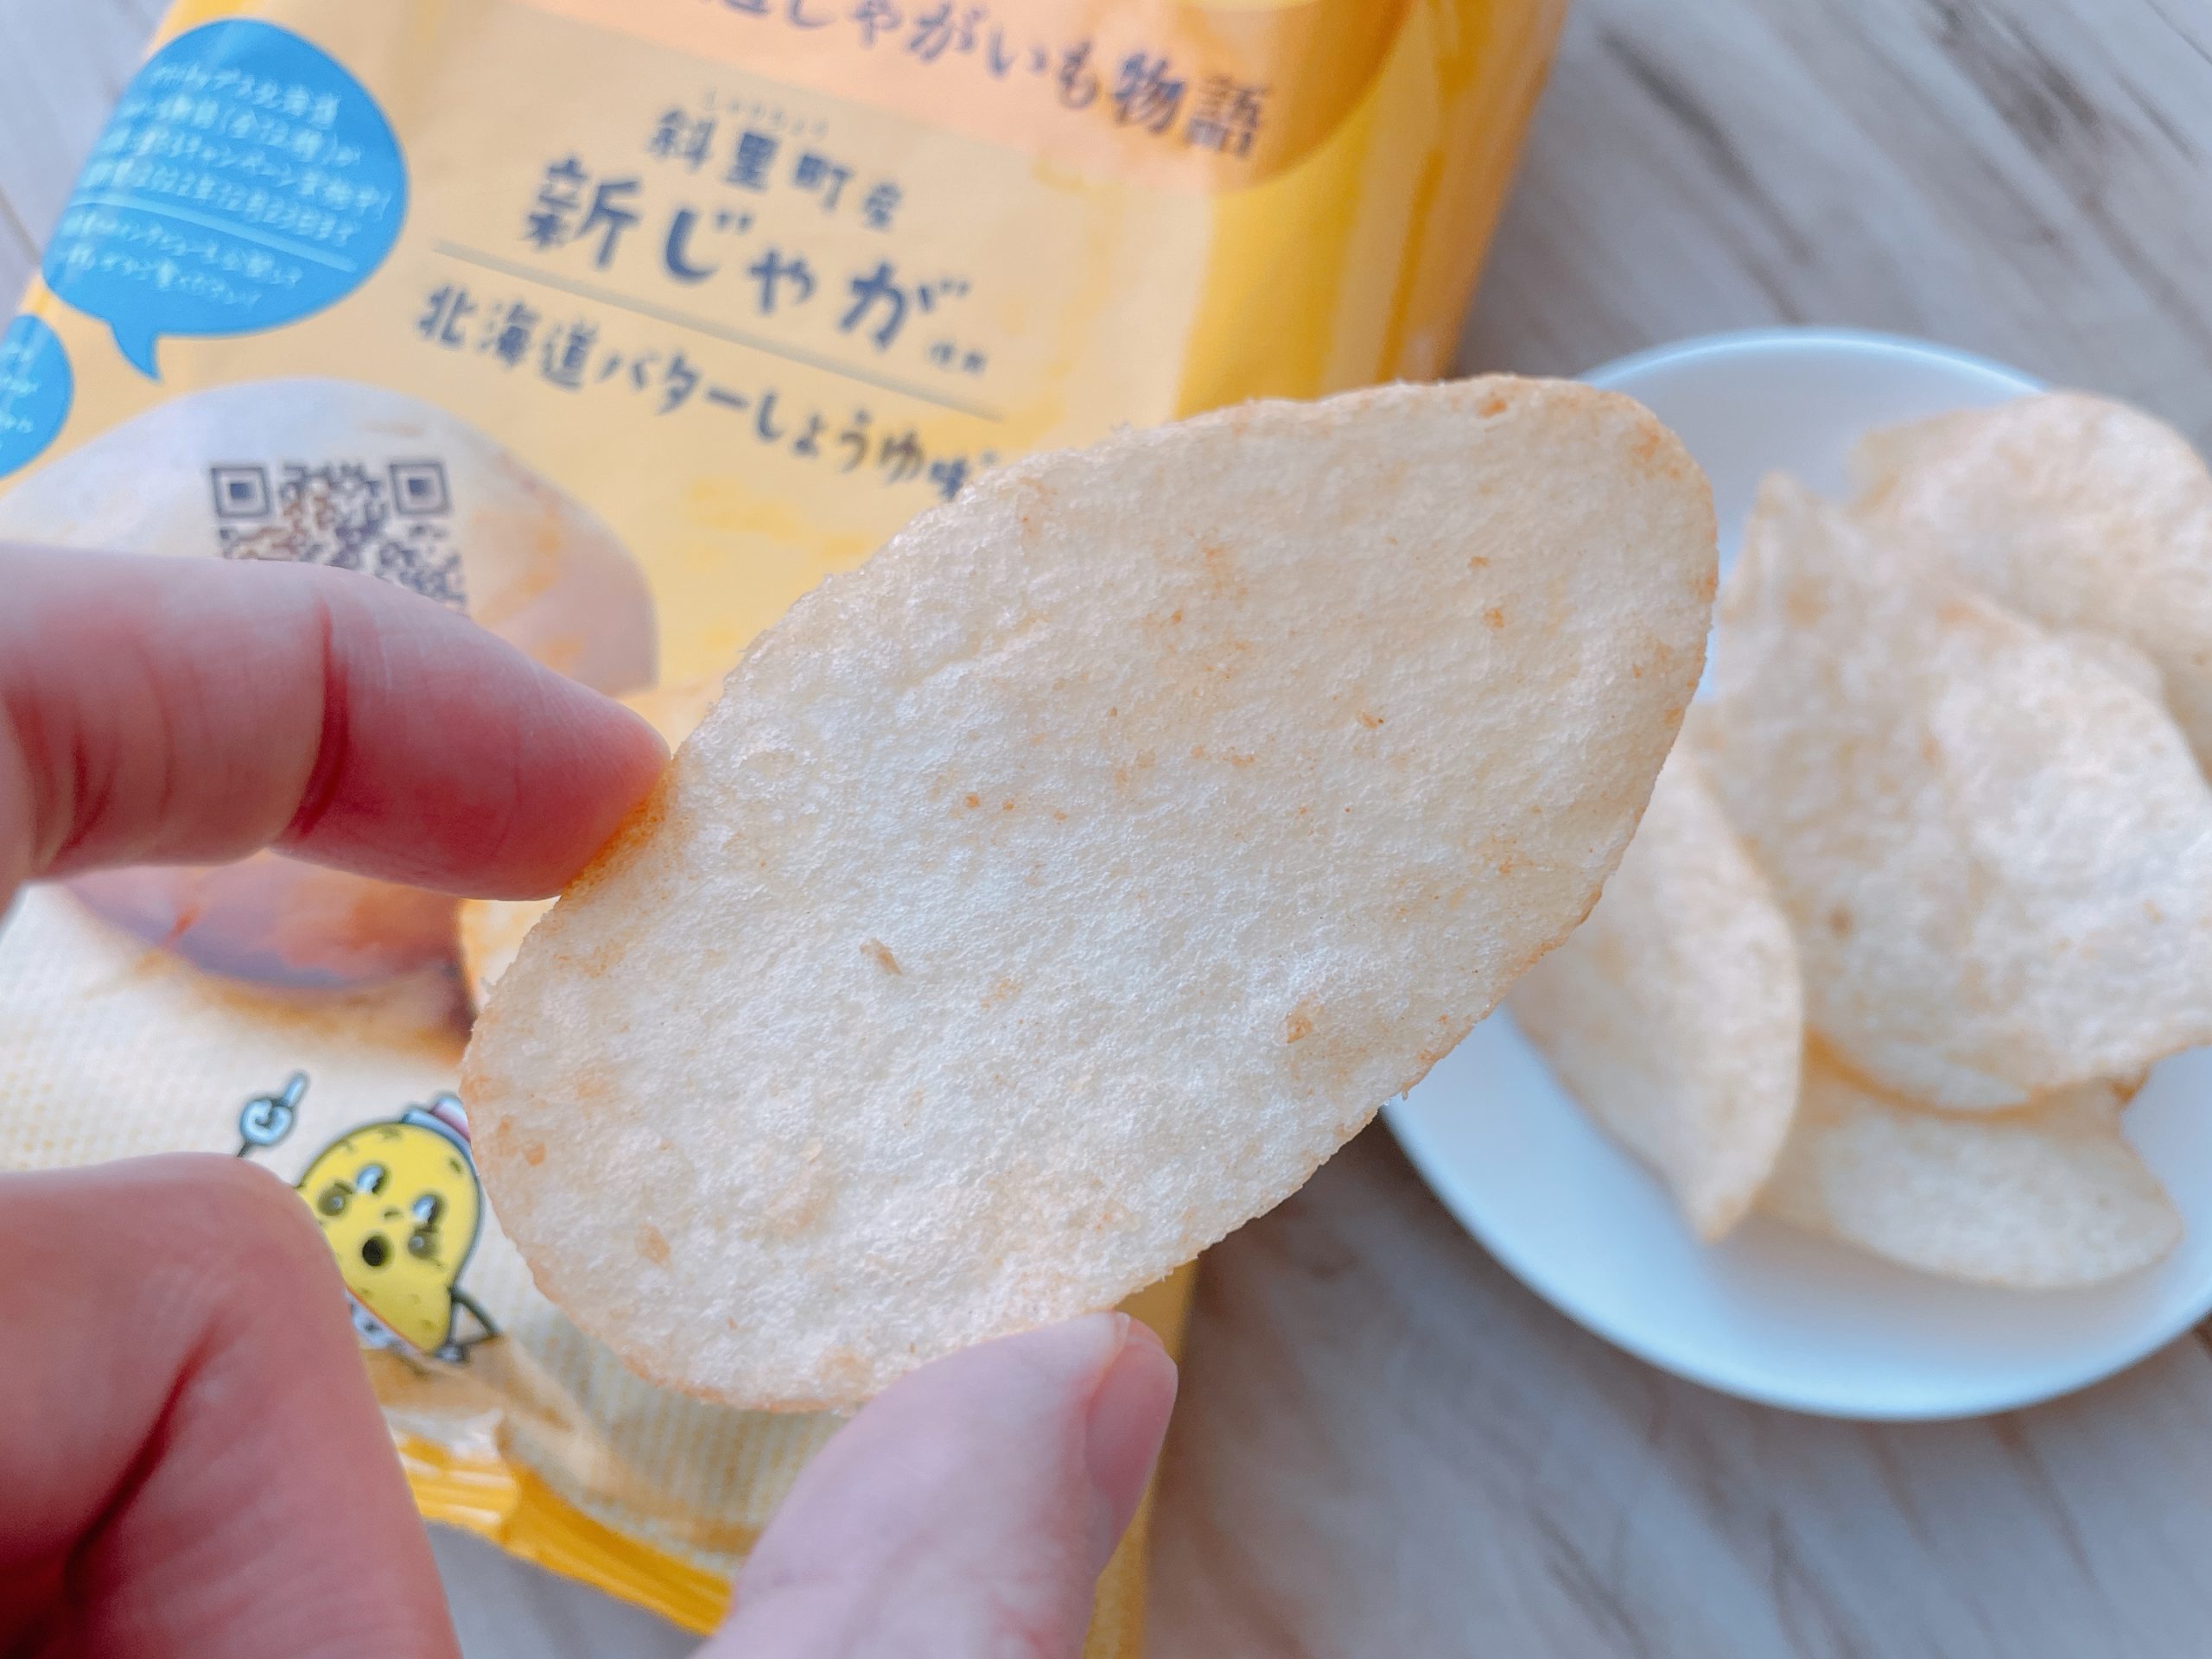 ポテトチップス 北海道じゃがいも物語 斜里町産新じゃが使用 北海道バターしょうゆ味は、しょうゆがしっかりと効いています